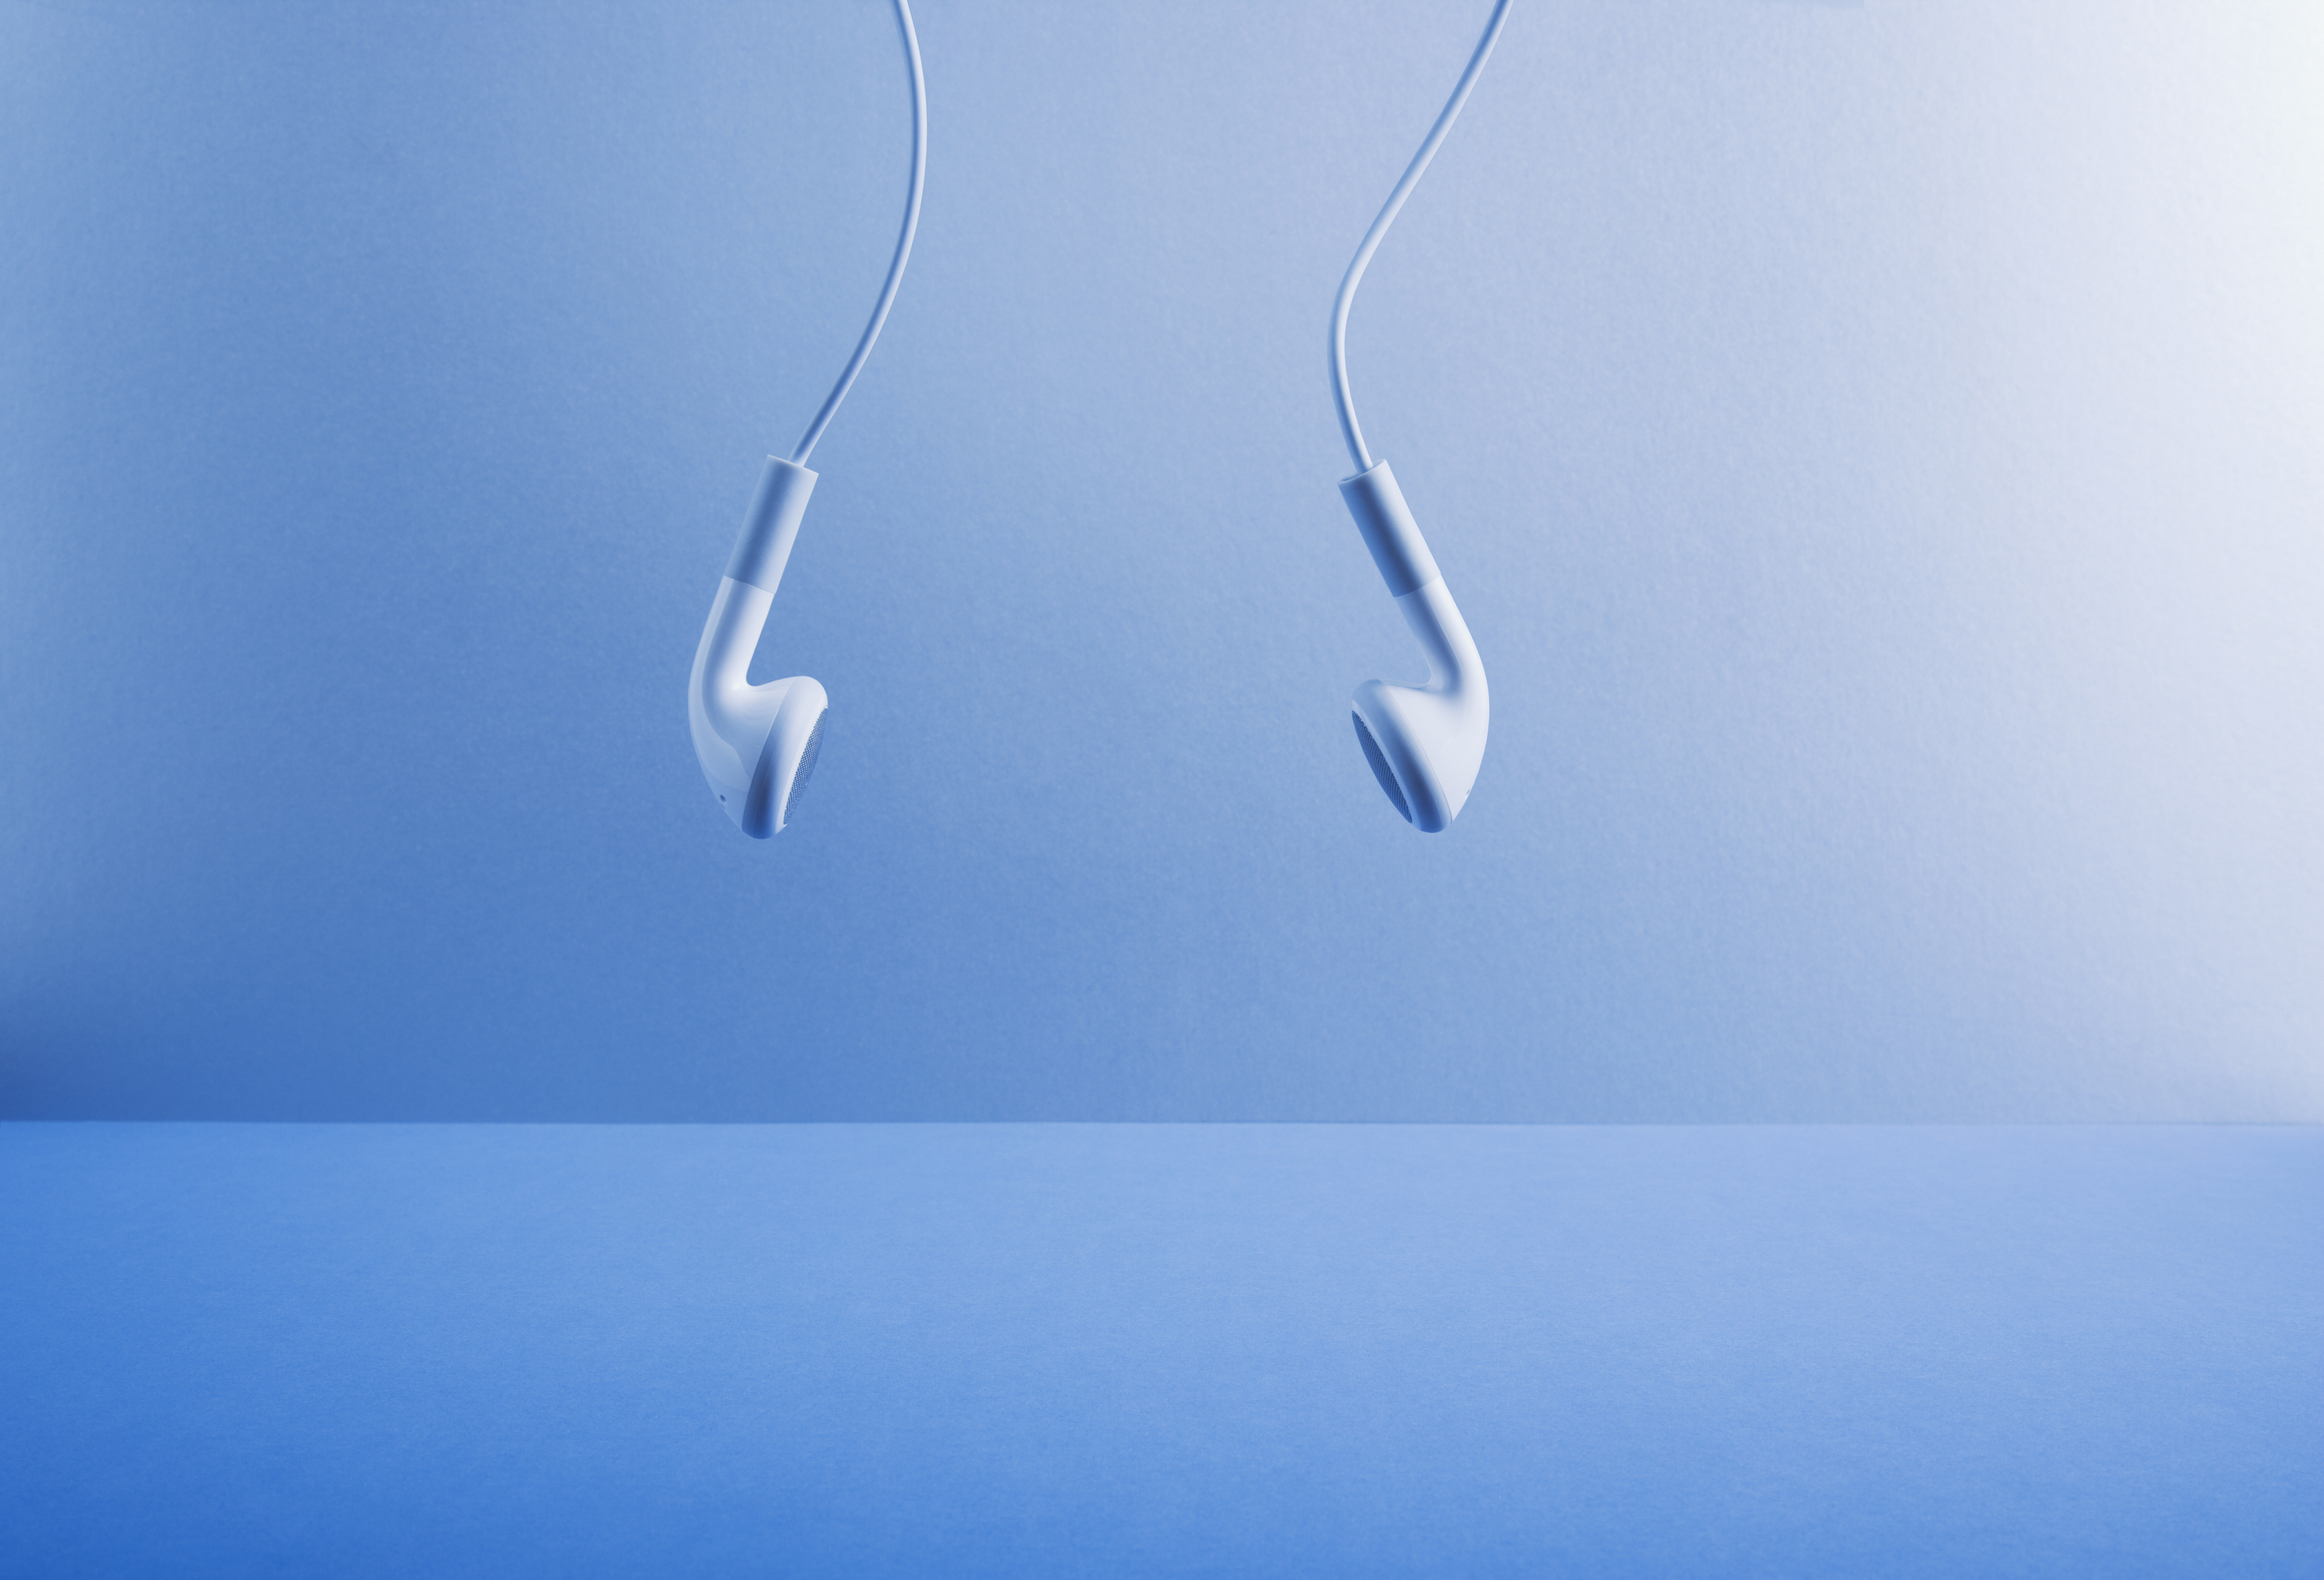 Imagem de fones de ouvido brancos pendurados contra um fundo azul.